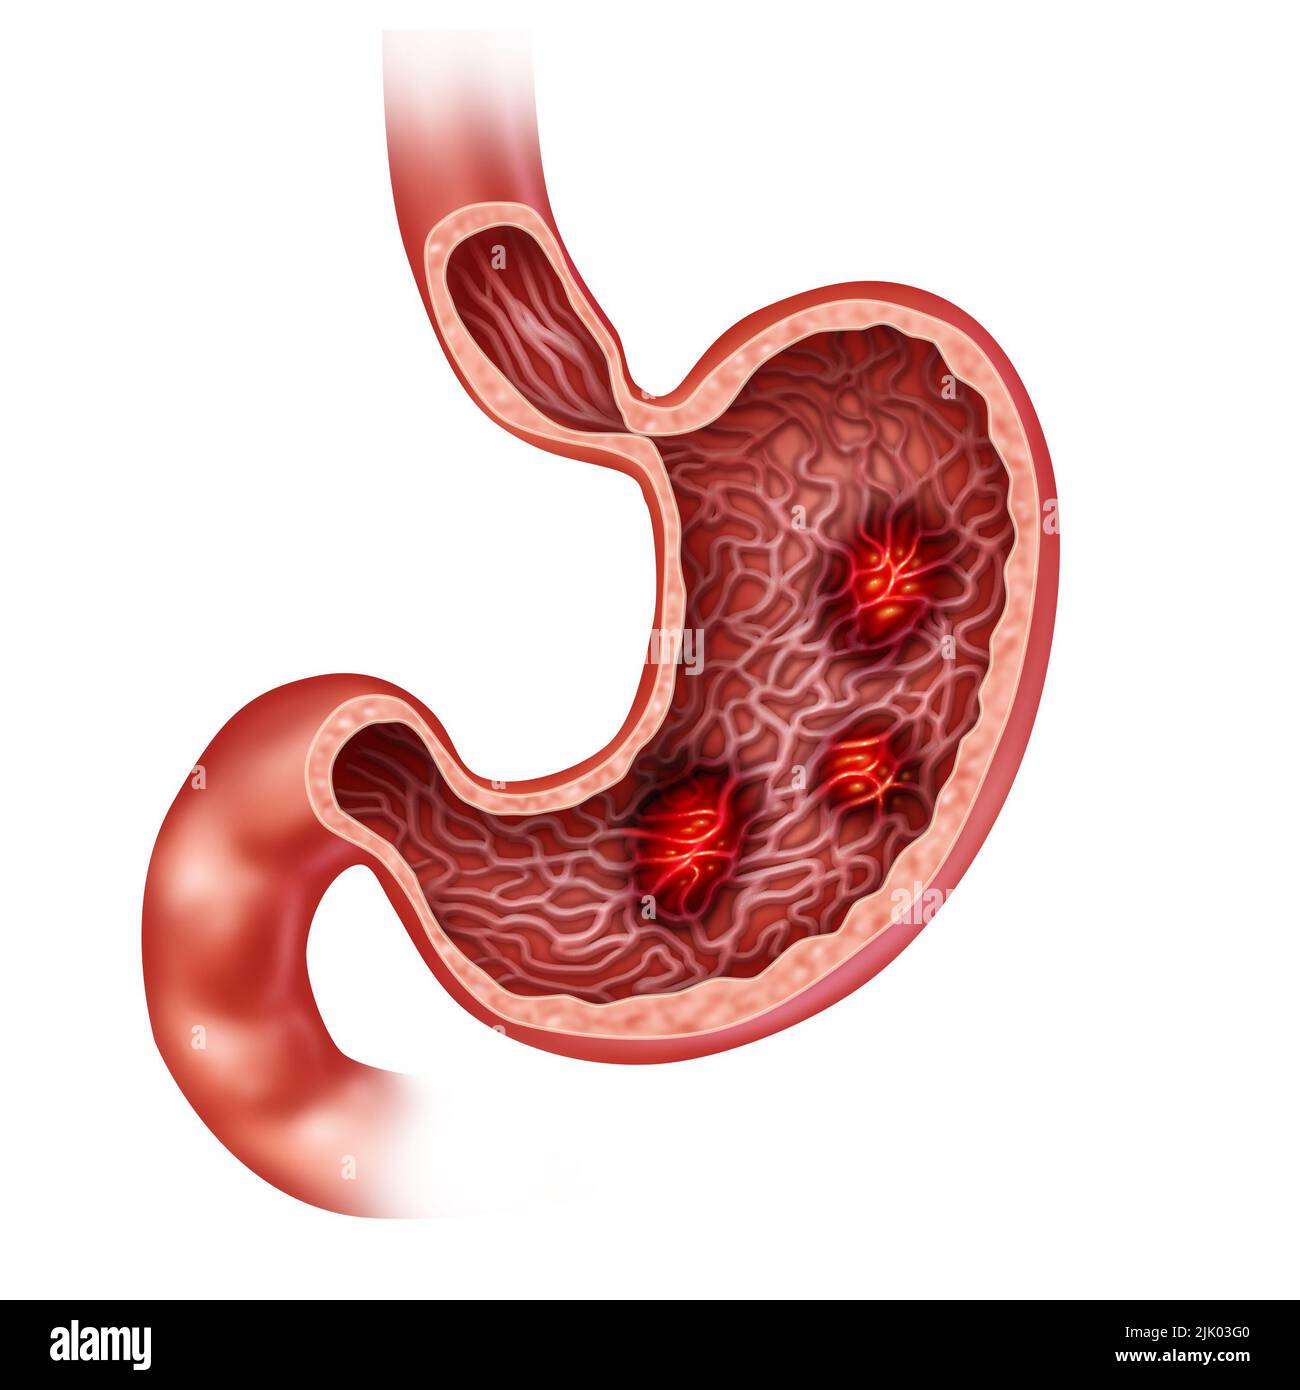 Ulcères d'estomac et un ulcère douloureux concept avec douleur d'indigestion brûlante dans le système digestif comme une illustration médicale de la digestion humaine orga Banque D'Images